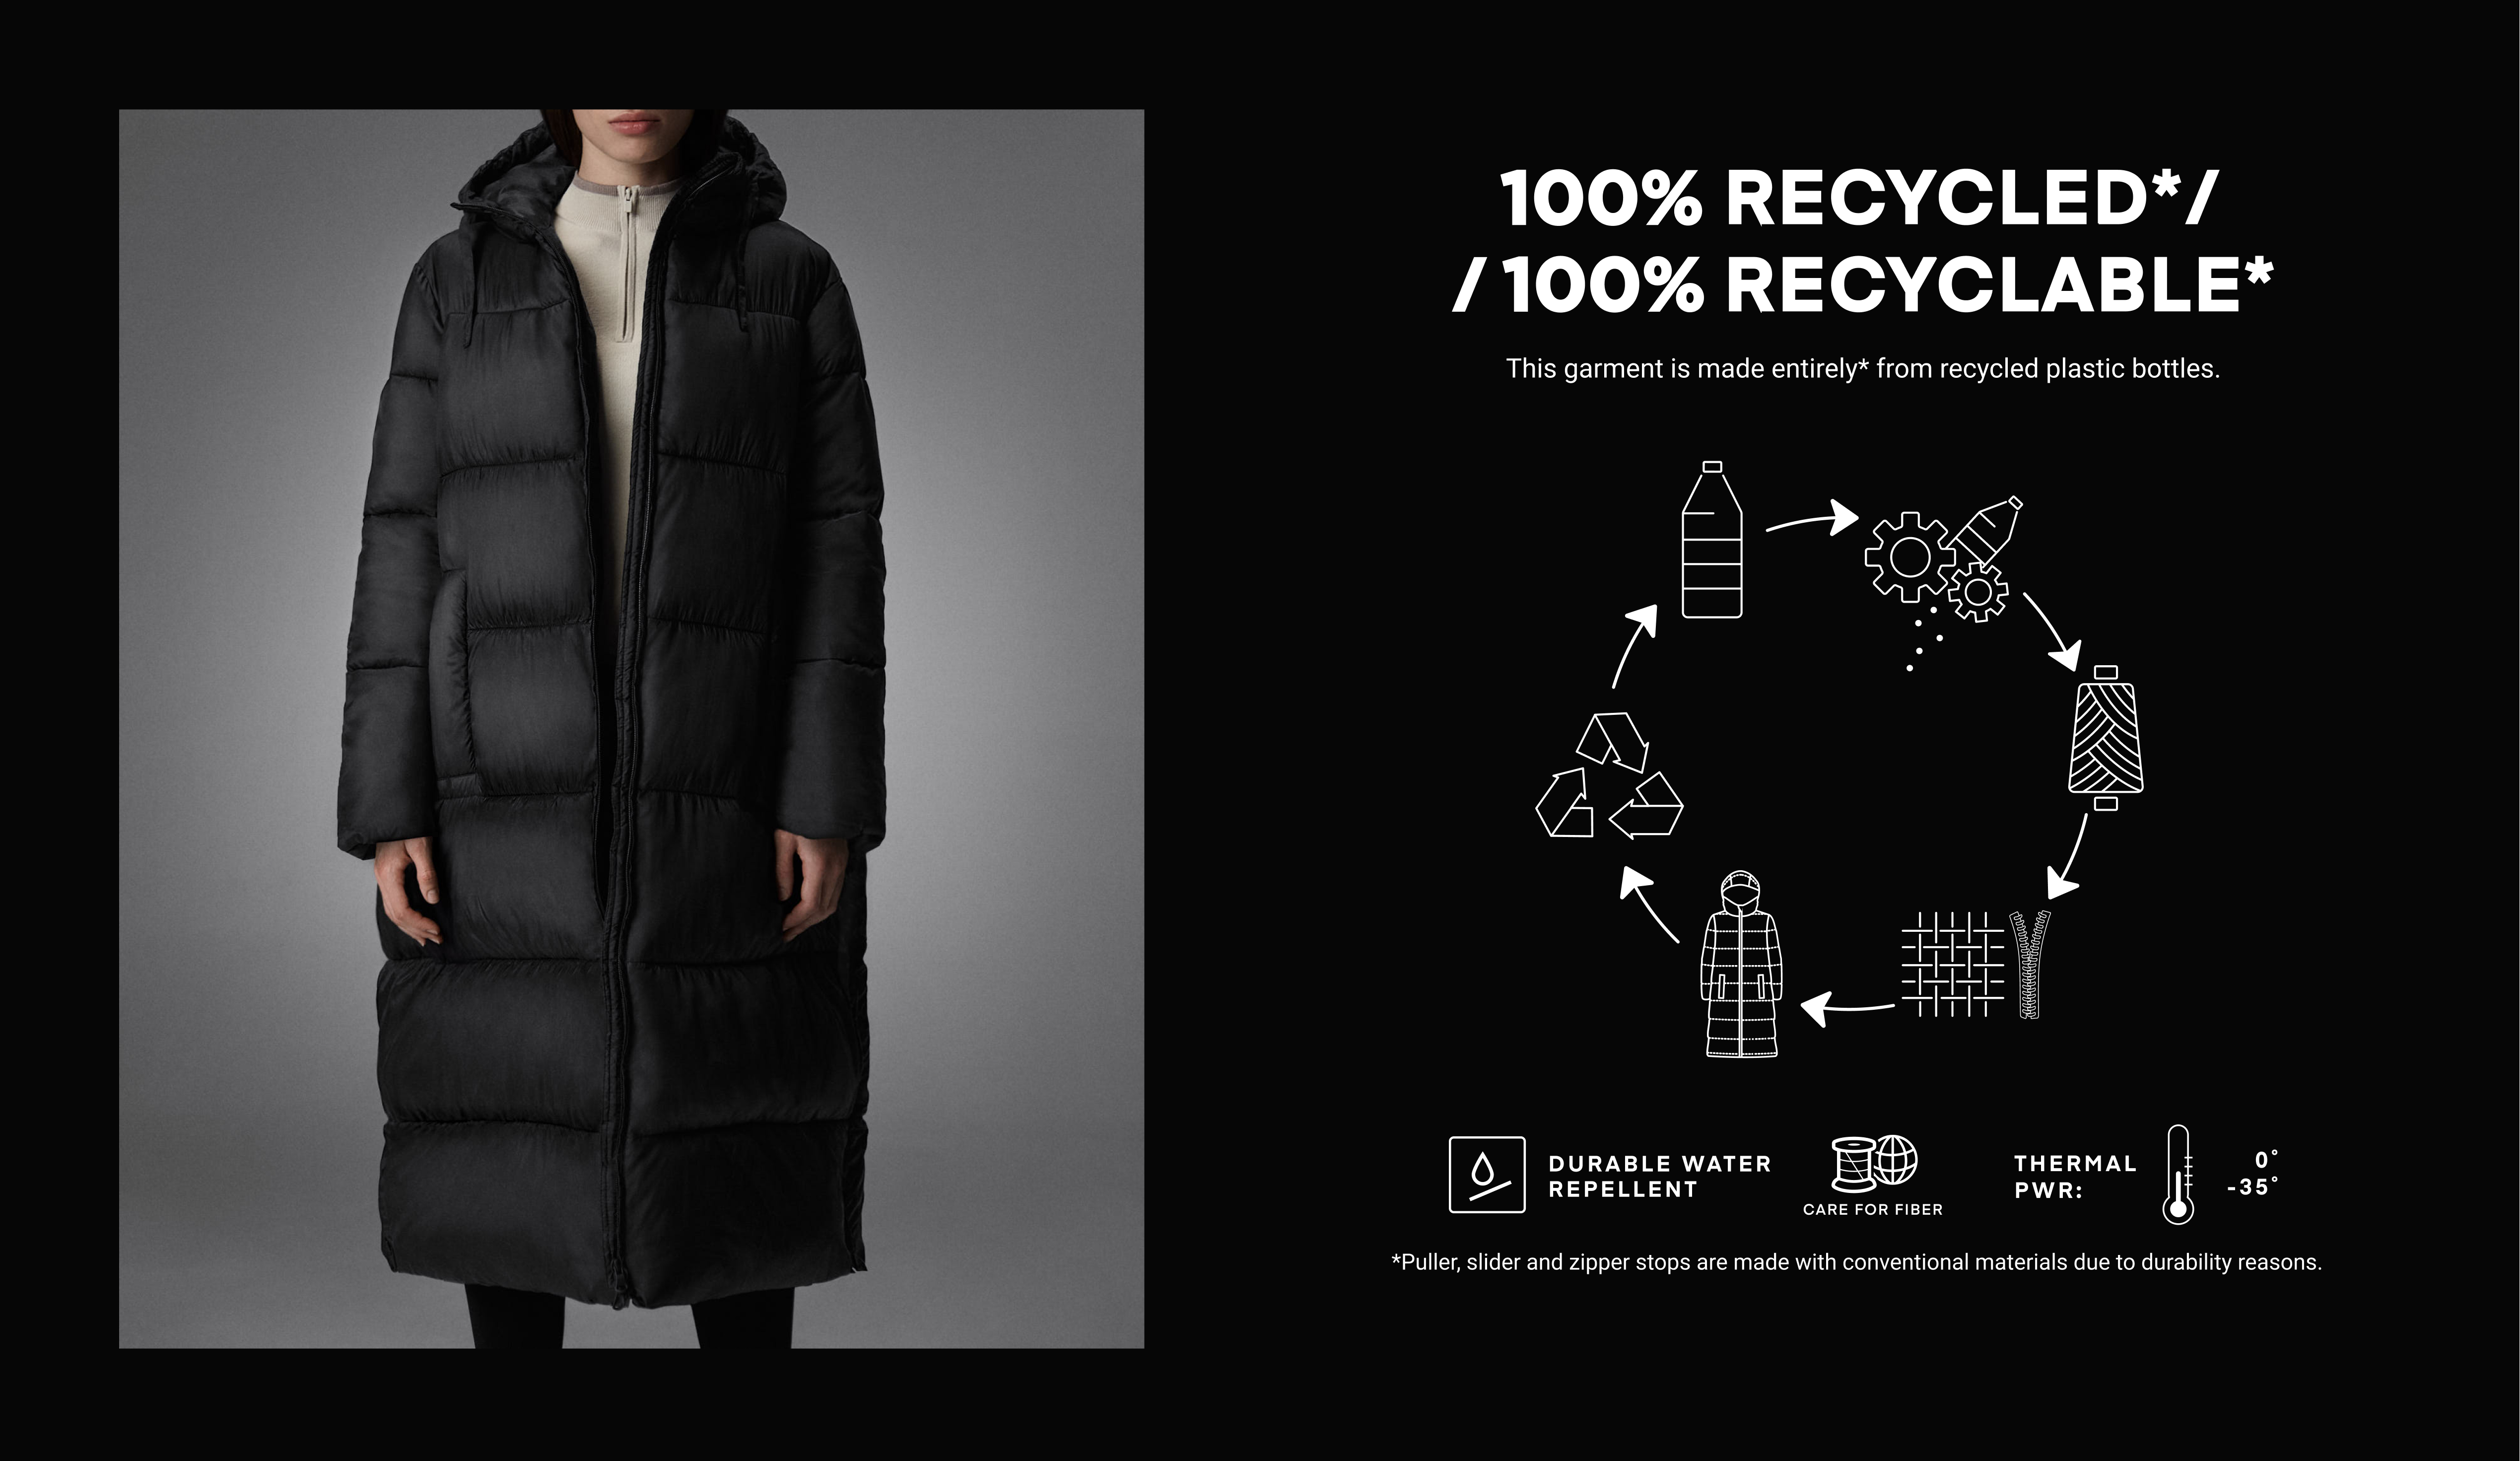 Abrigo acolchado 100% reciclado y 100% reciclable